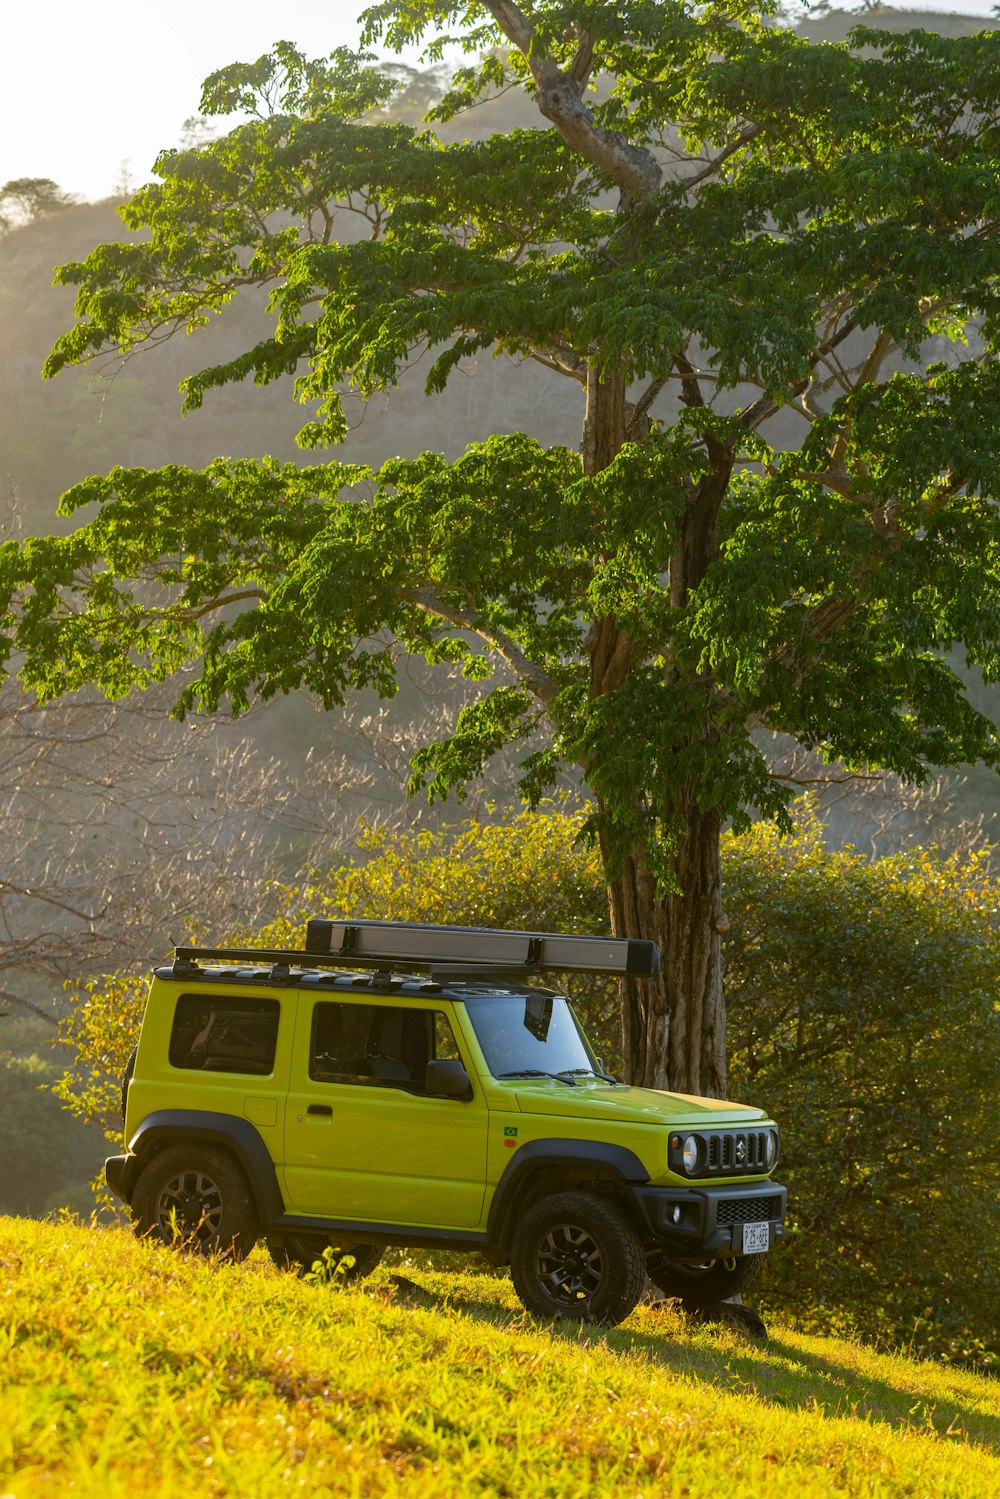 Une jeep vert vif est garée dans un champ